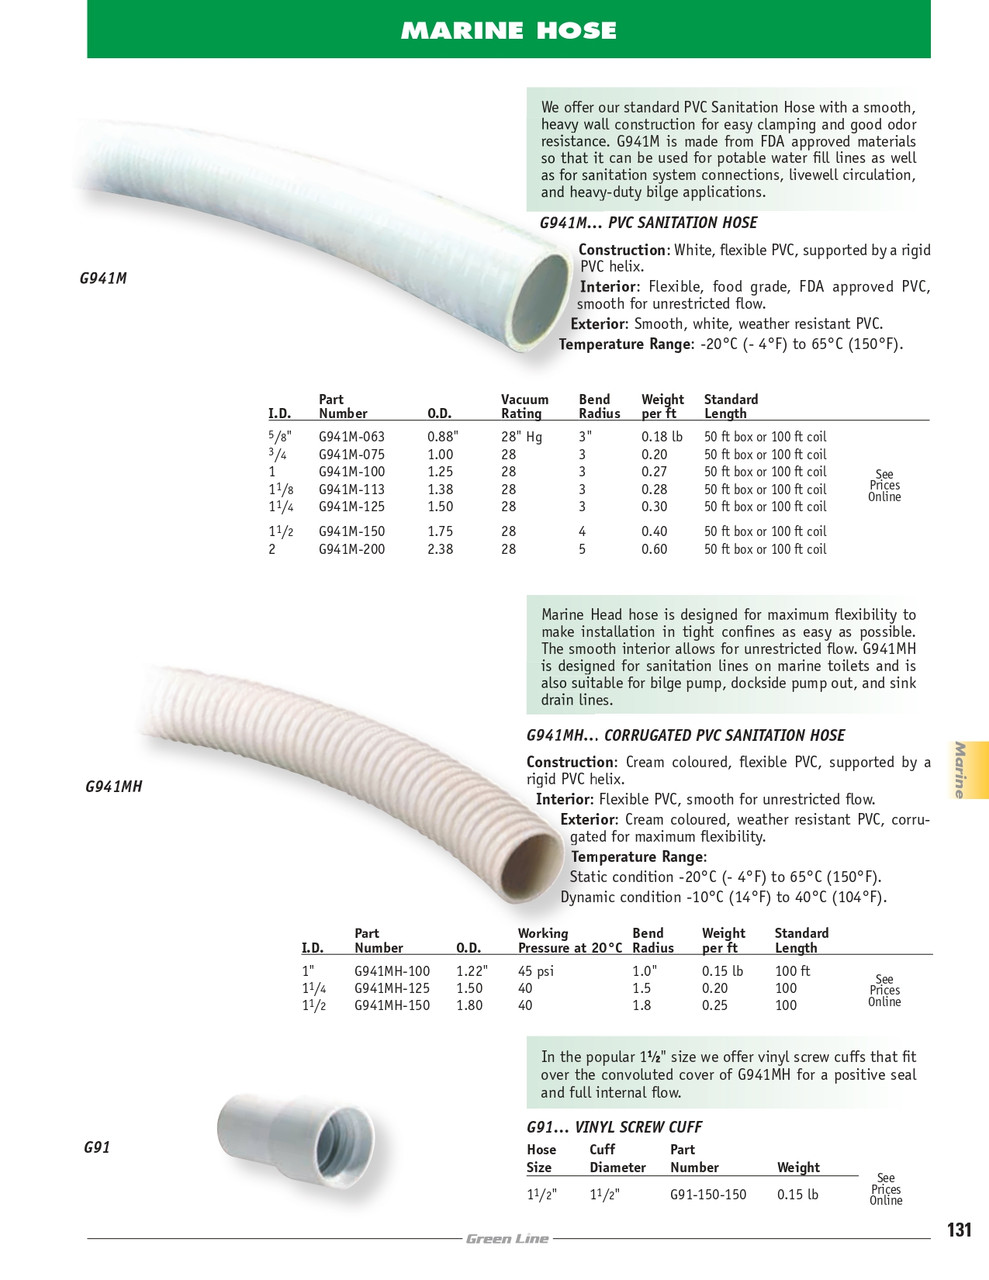 3/4" PVC Sanitation Hose   G941M-075